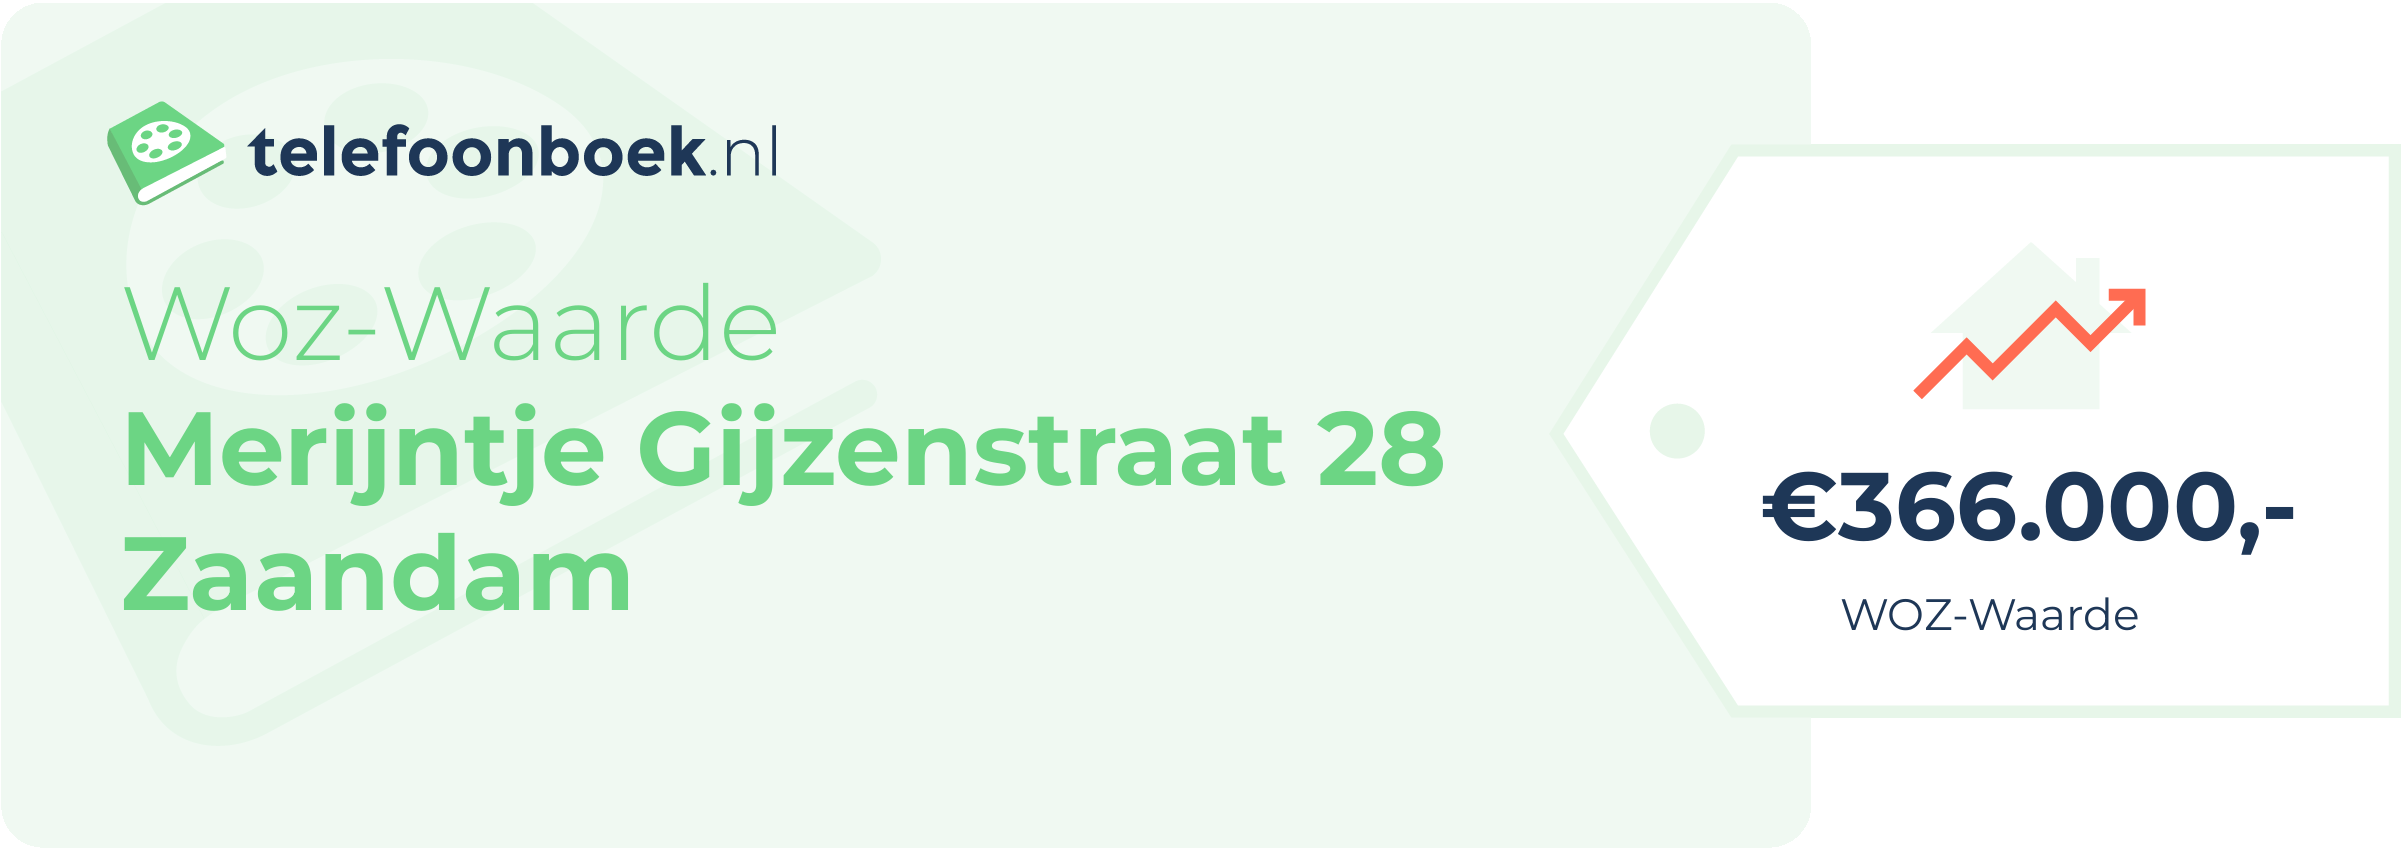 WOZ-waarde Merijntje Gijzenstraat 28 Zaandam